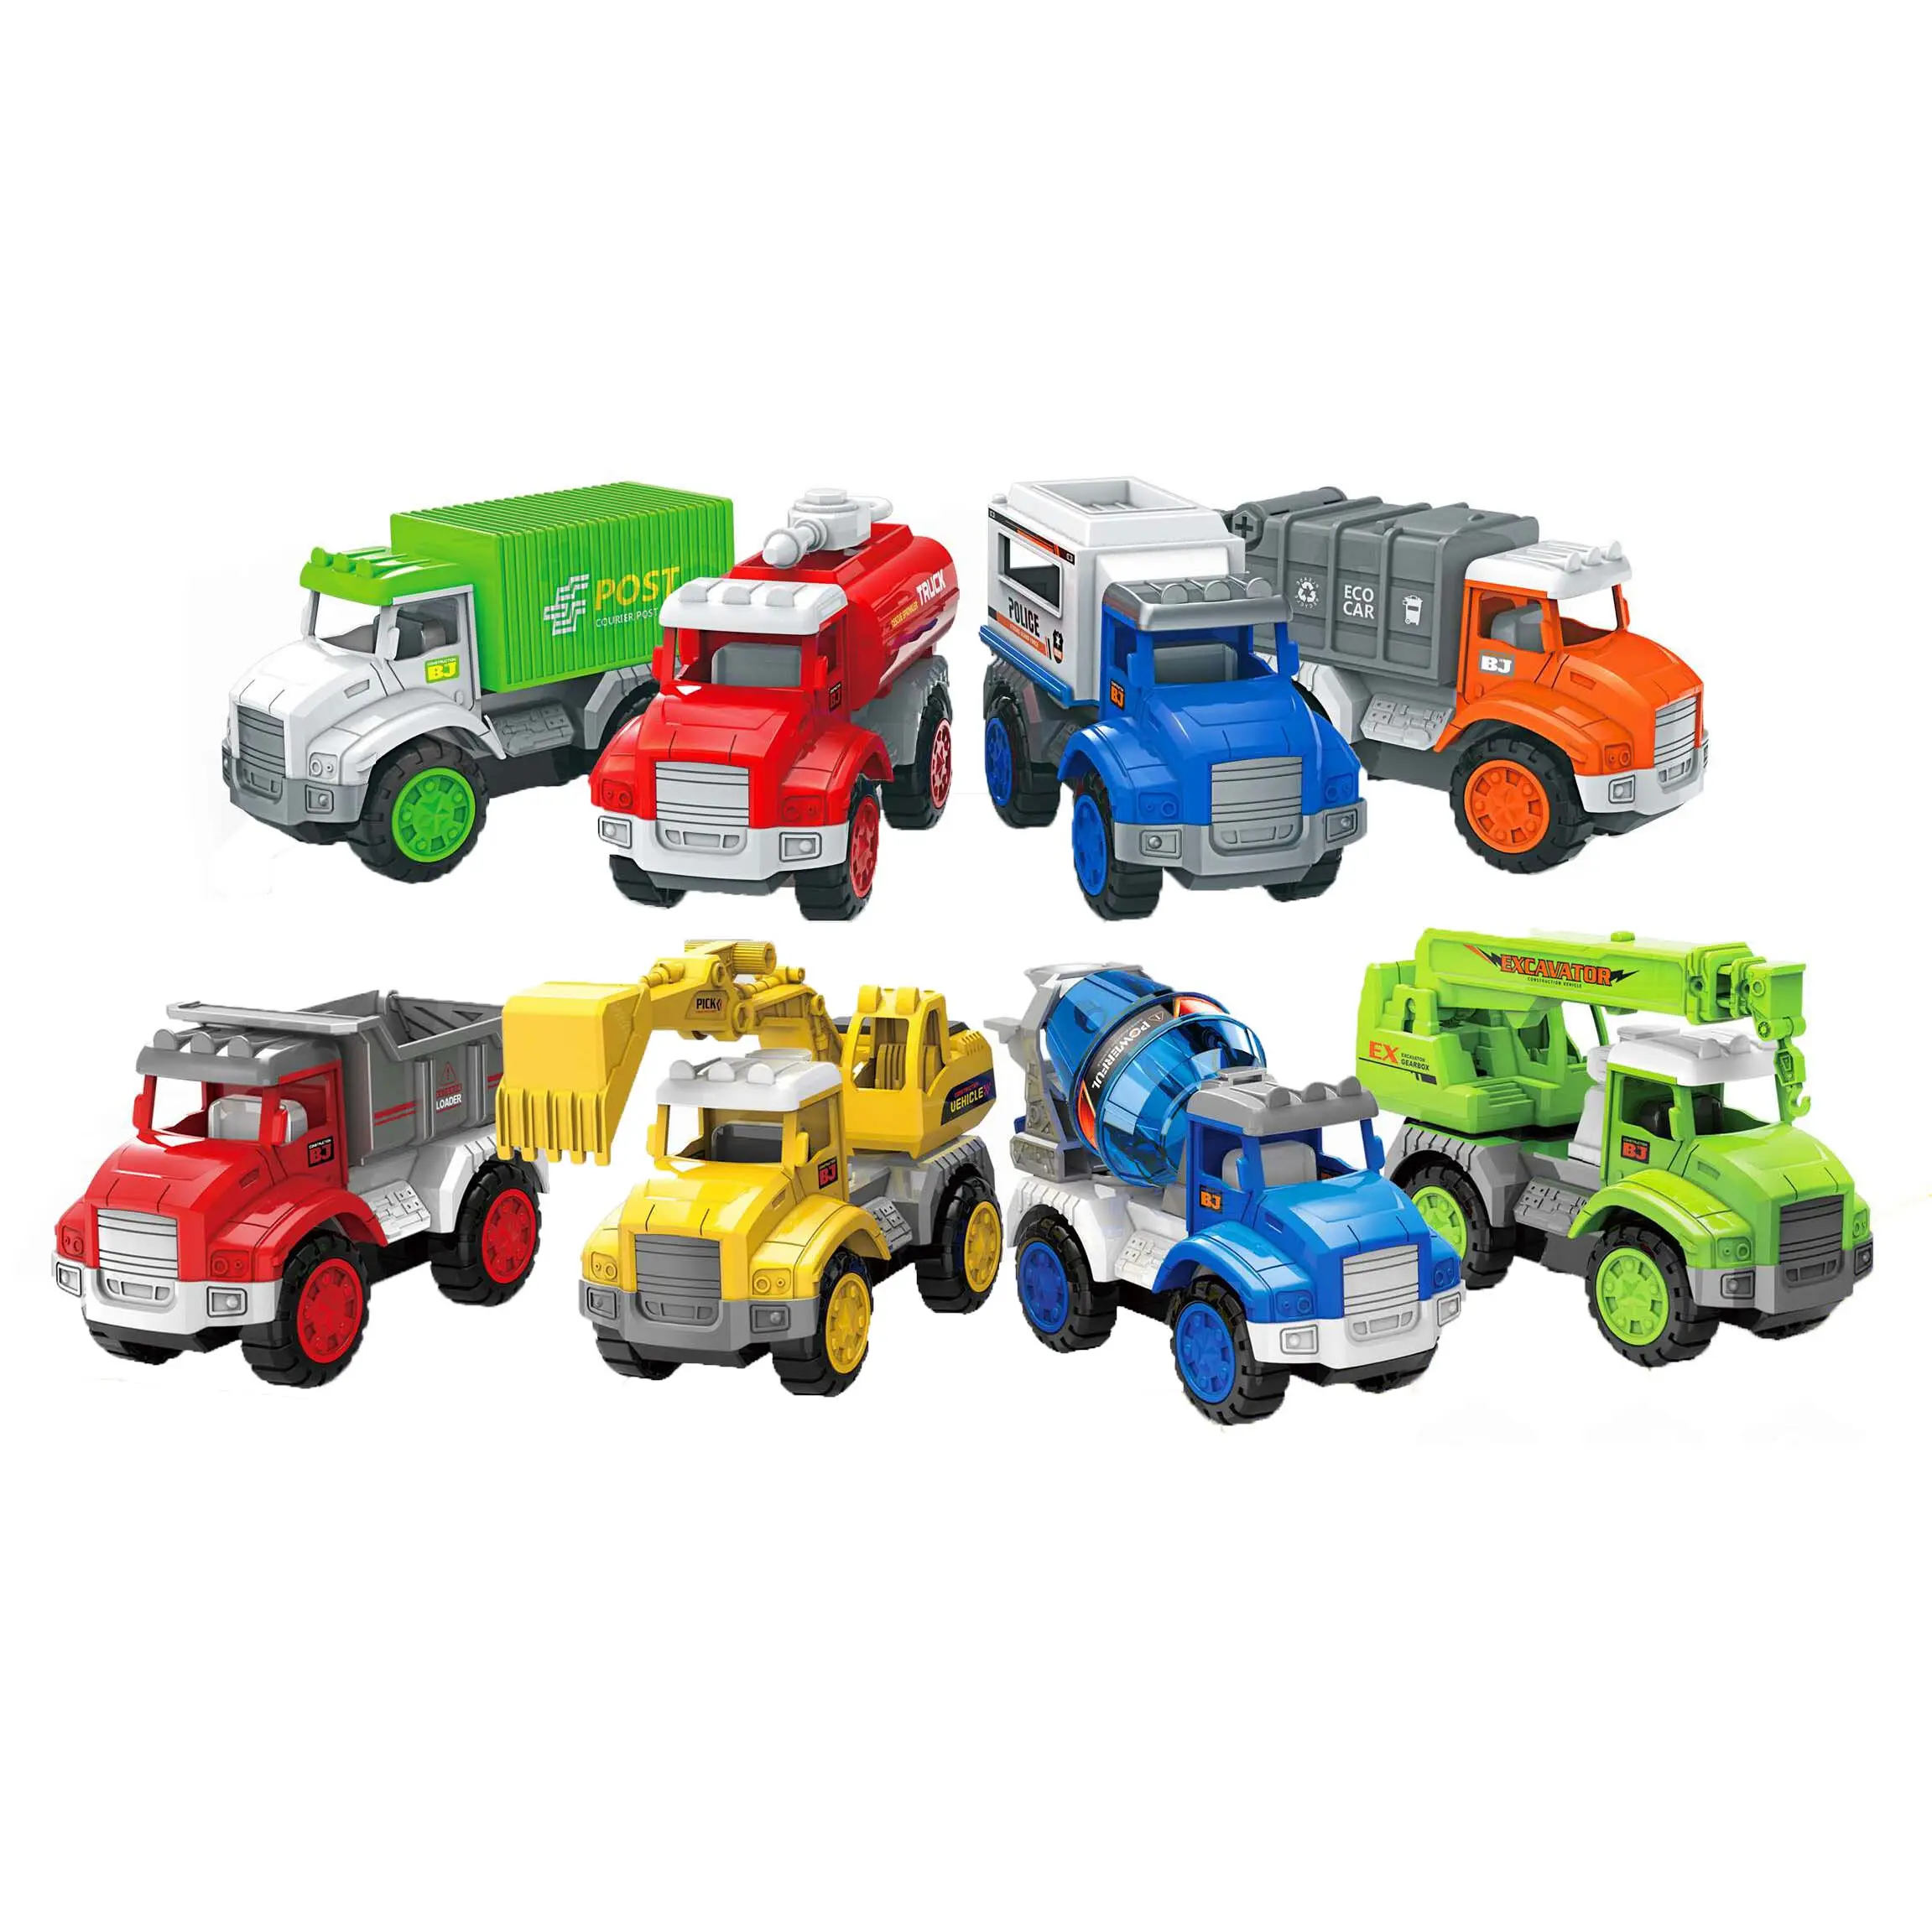 Kinder Trägheit Bautechnik Fahrzeug Spielzeug Reibung Engineering LKW Auto Modell Spielzeug